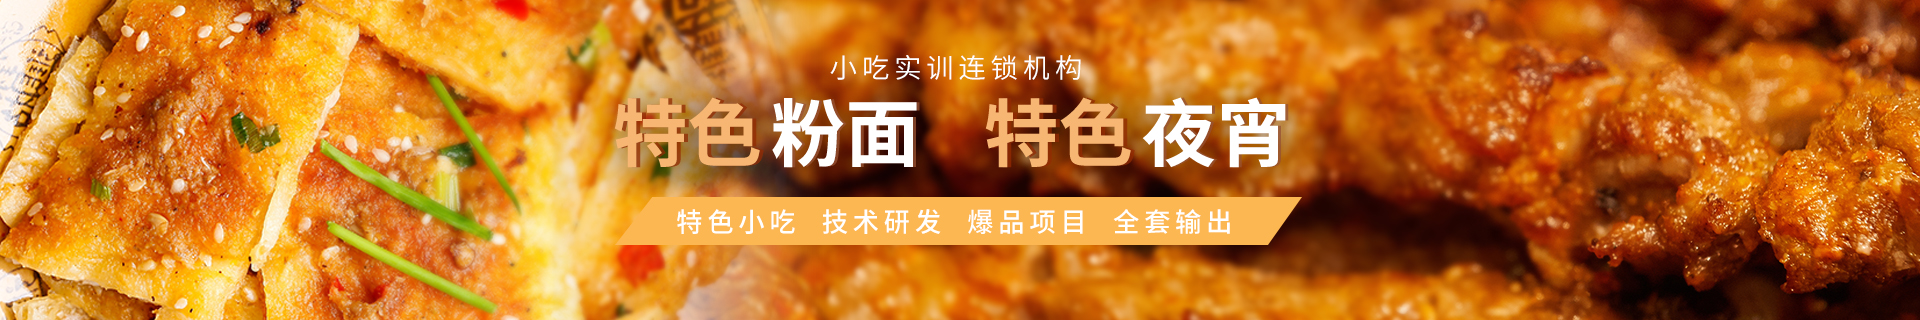 广州新塘镇食为先小吃培训中心